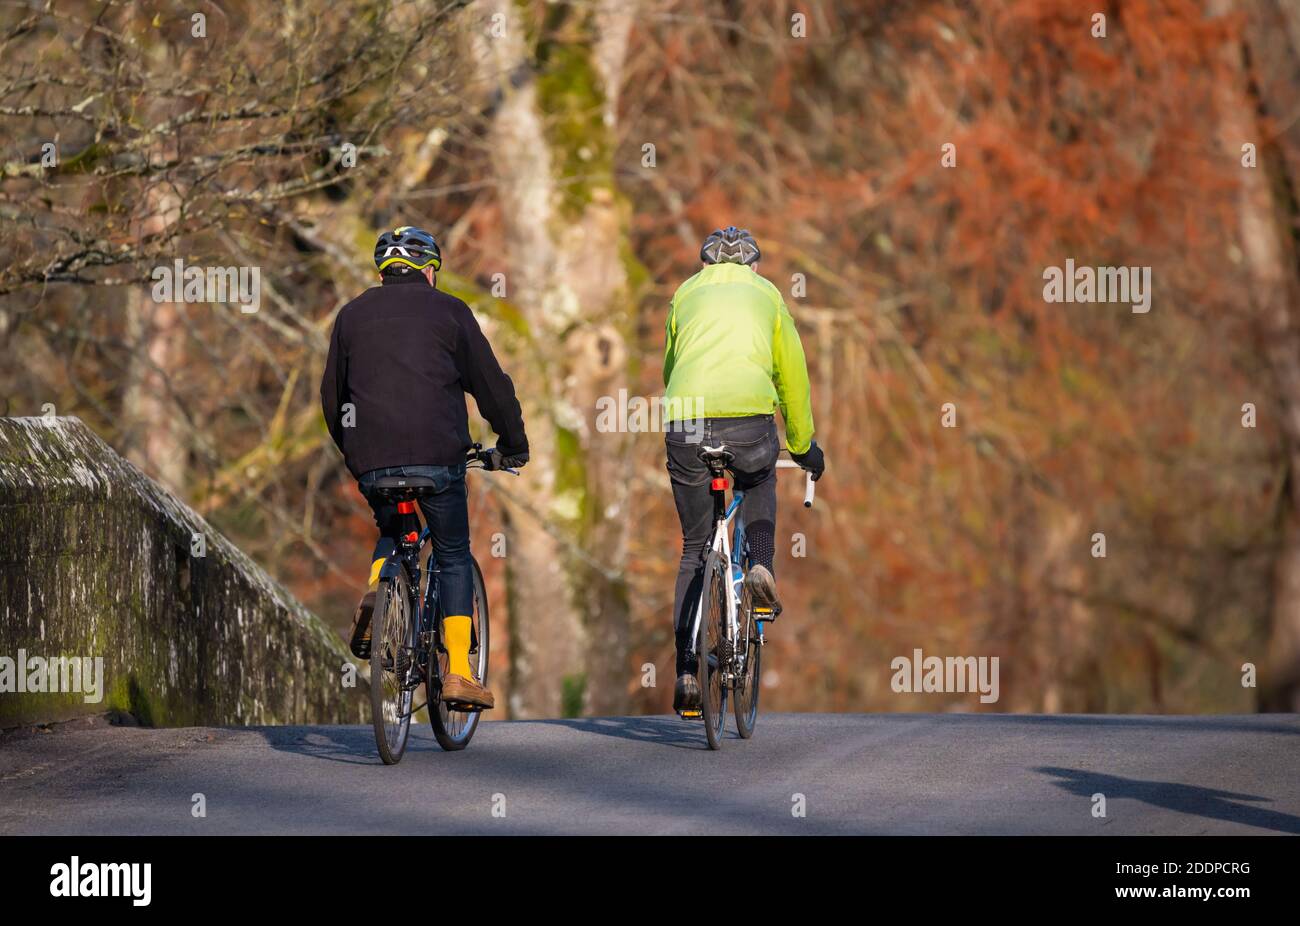 Zwei männliche Radfahrer, die über eine Brücke fahren und 2 verschiedene Helme tragen, in West Sussex, England, Großbritannien. Stockfoto